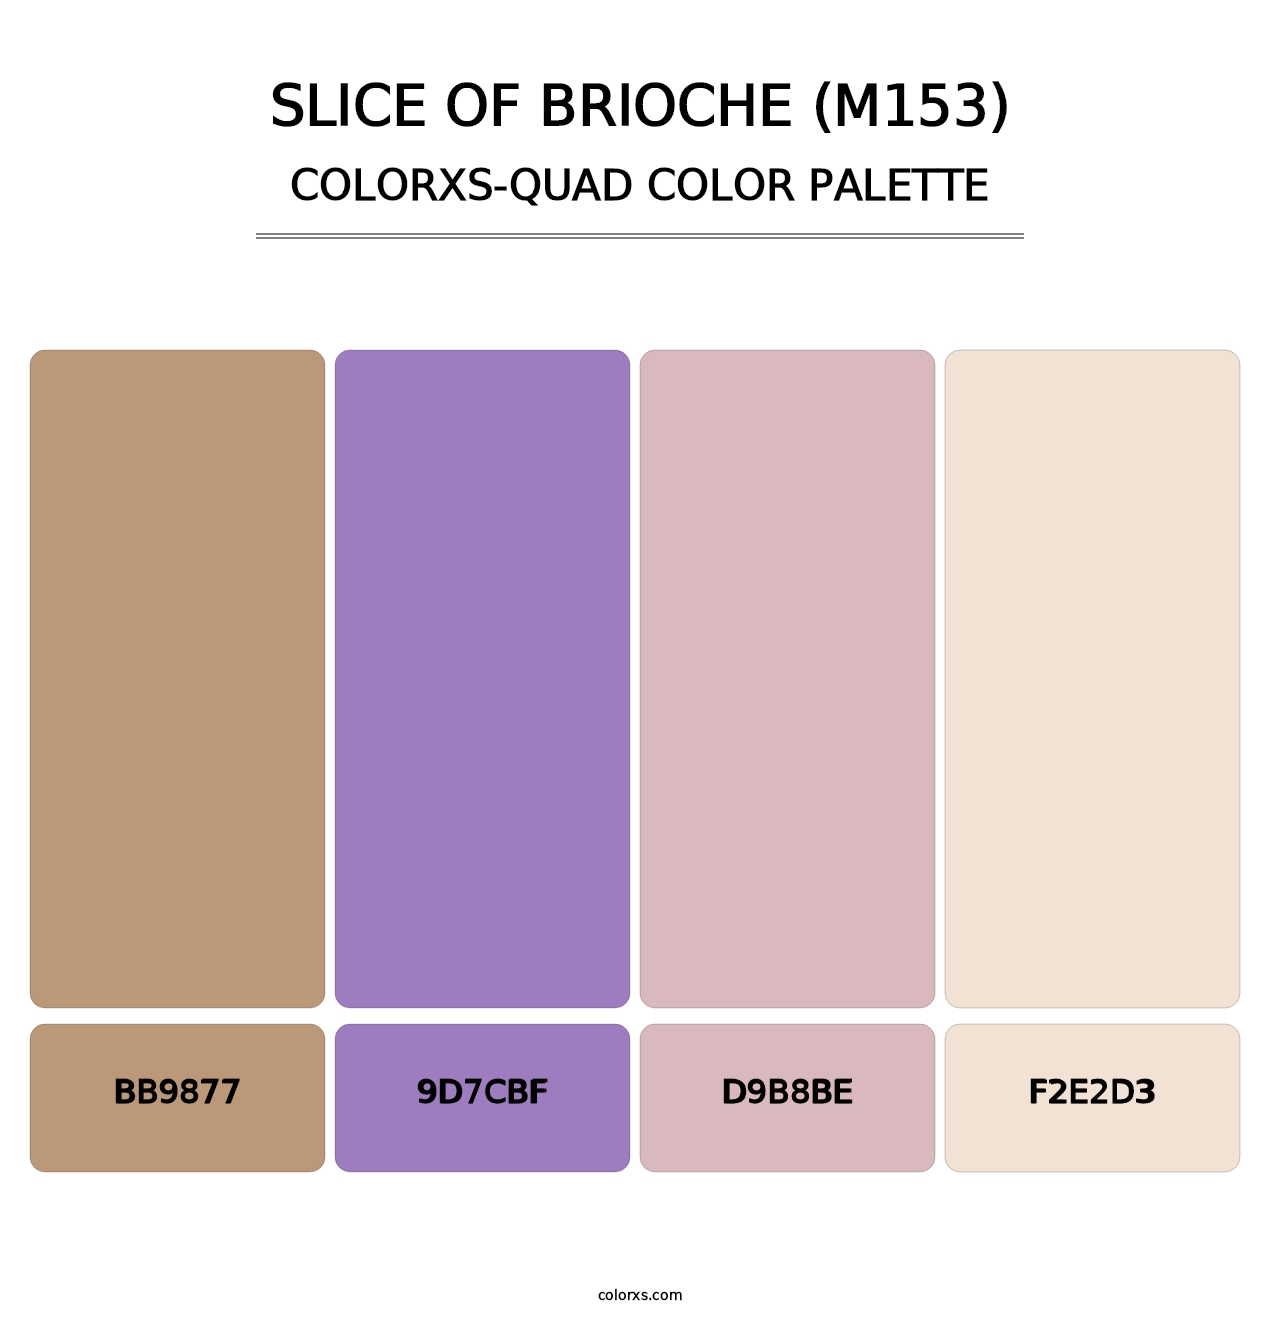 Slice of Brioche (M153) - Colorxs Quad Palette